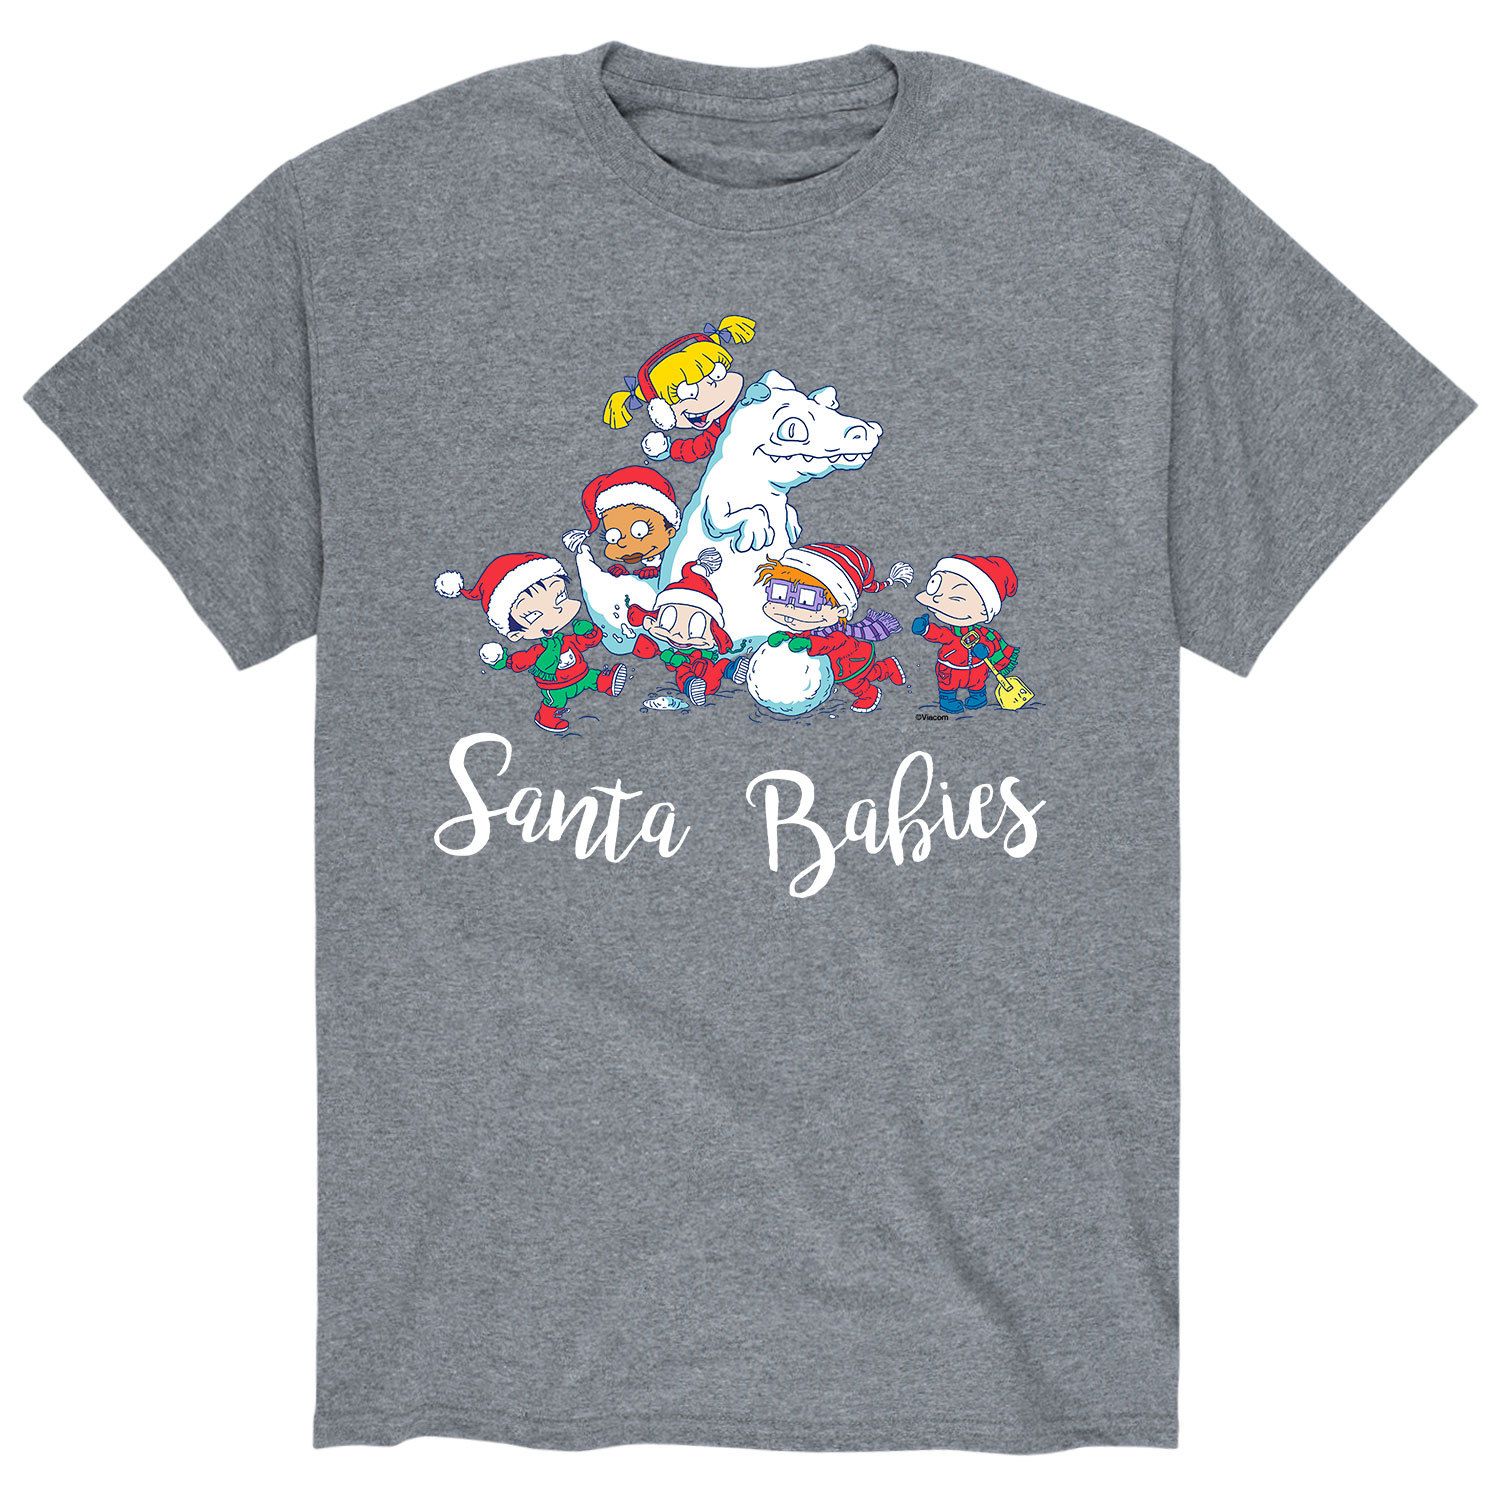 мужская футболка polar express santas sleigh licensed character Мужская футболка Rugrats Santas Babies Licensed Character